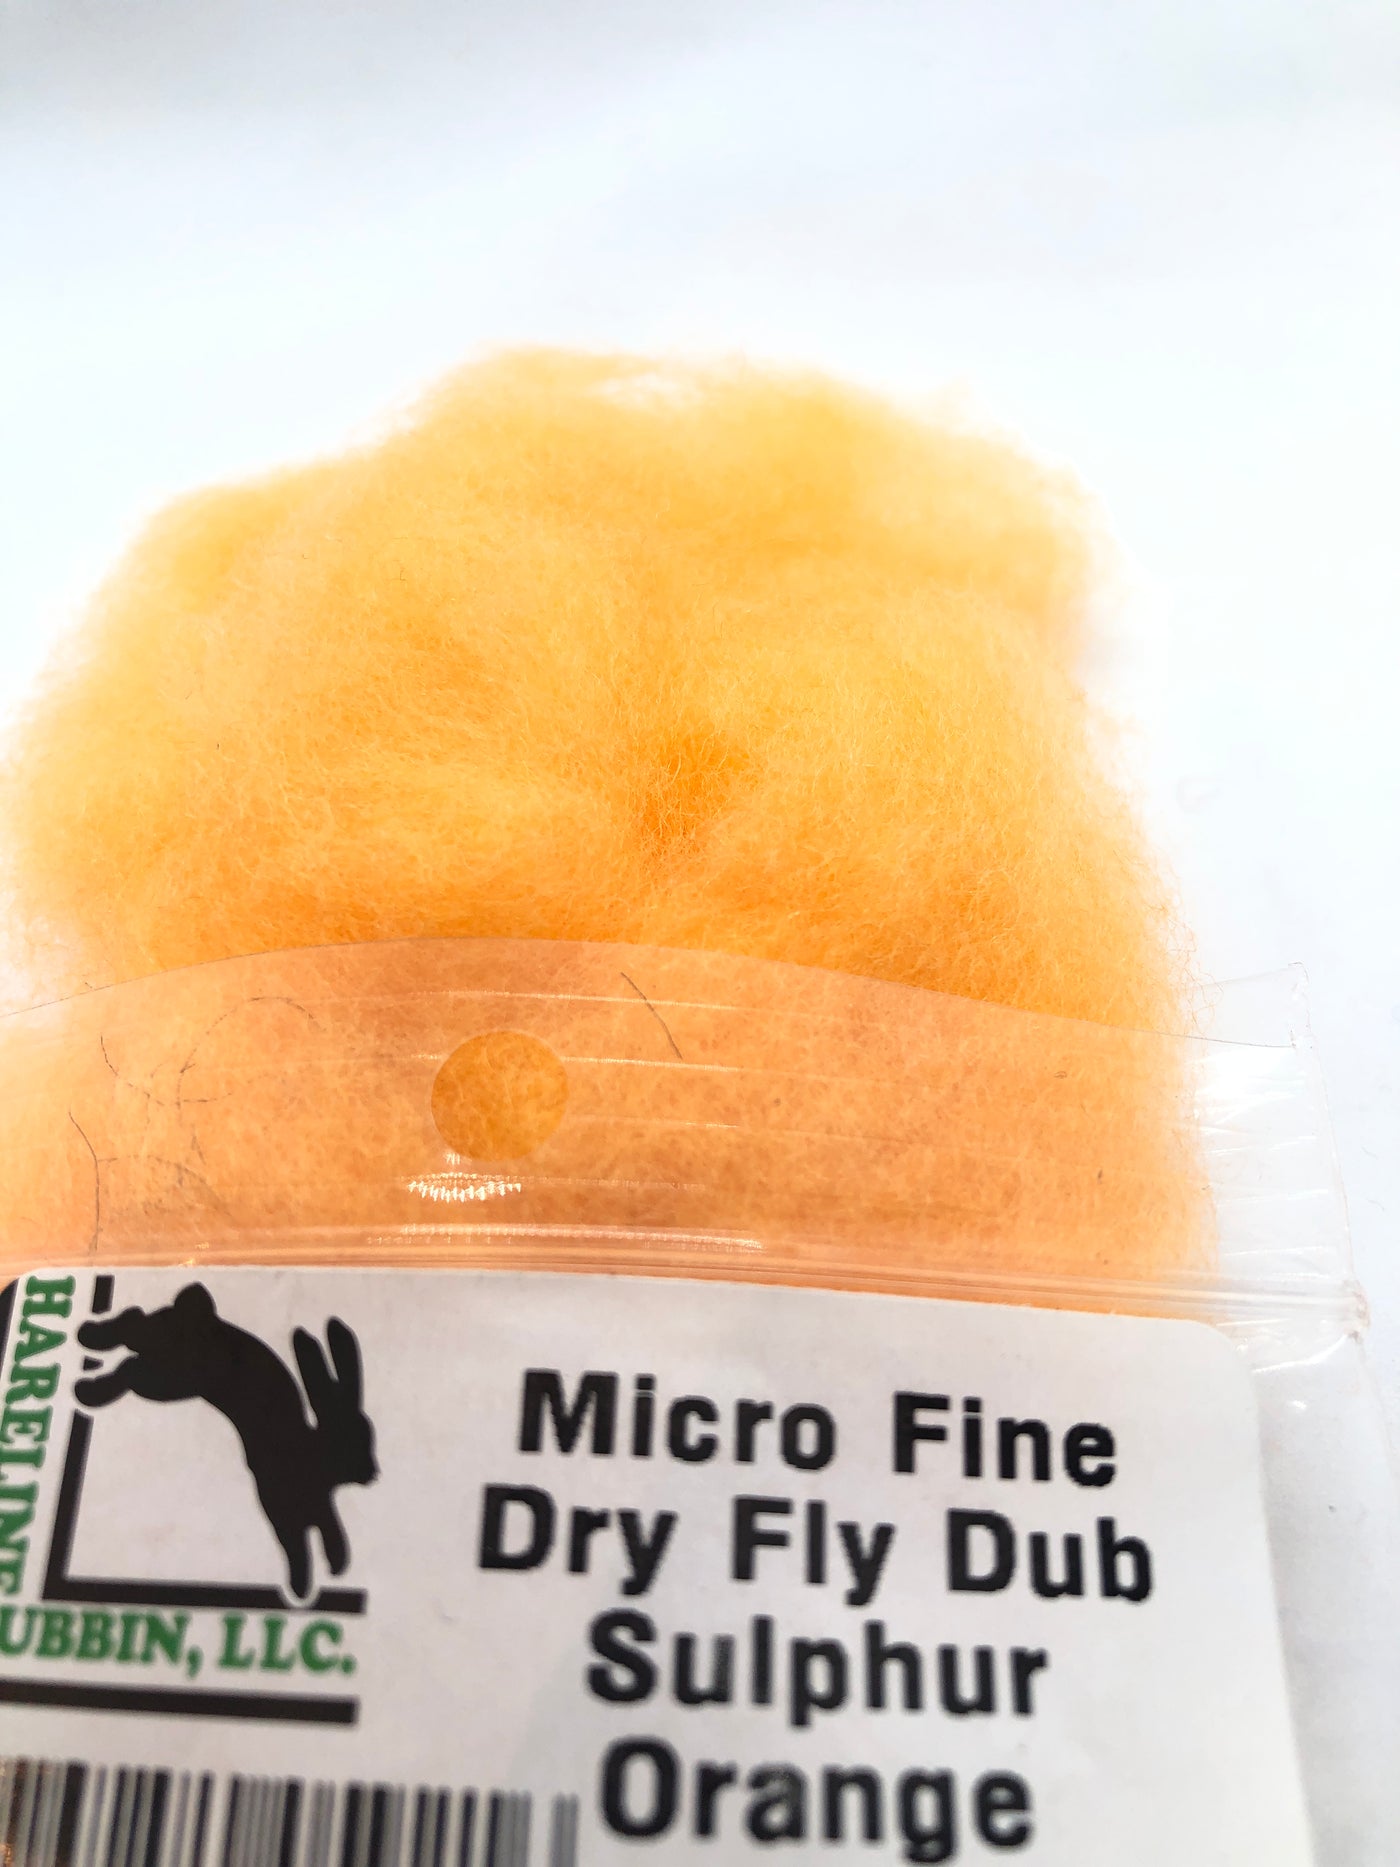 Hareline Micro Fine Dry Fly Dub